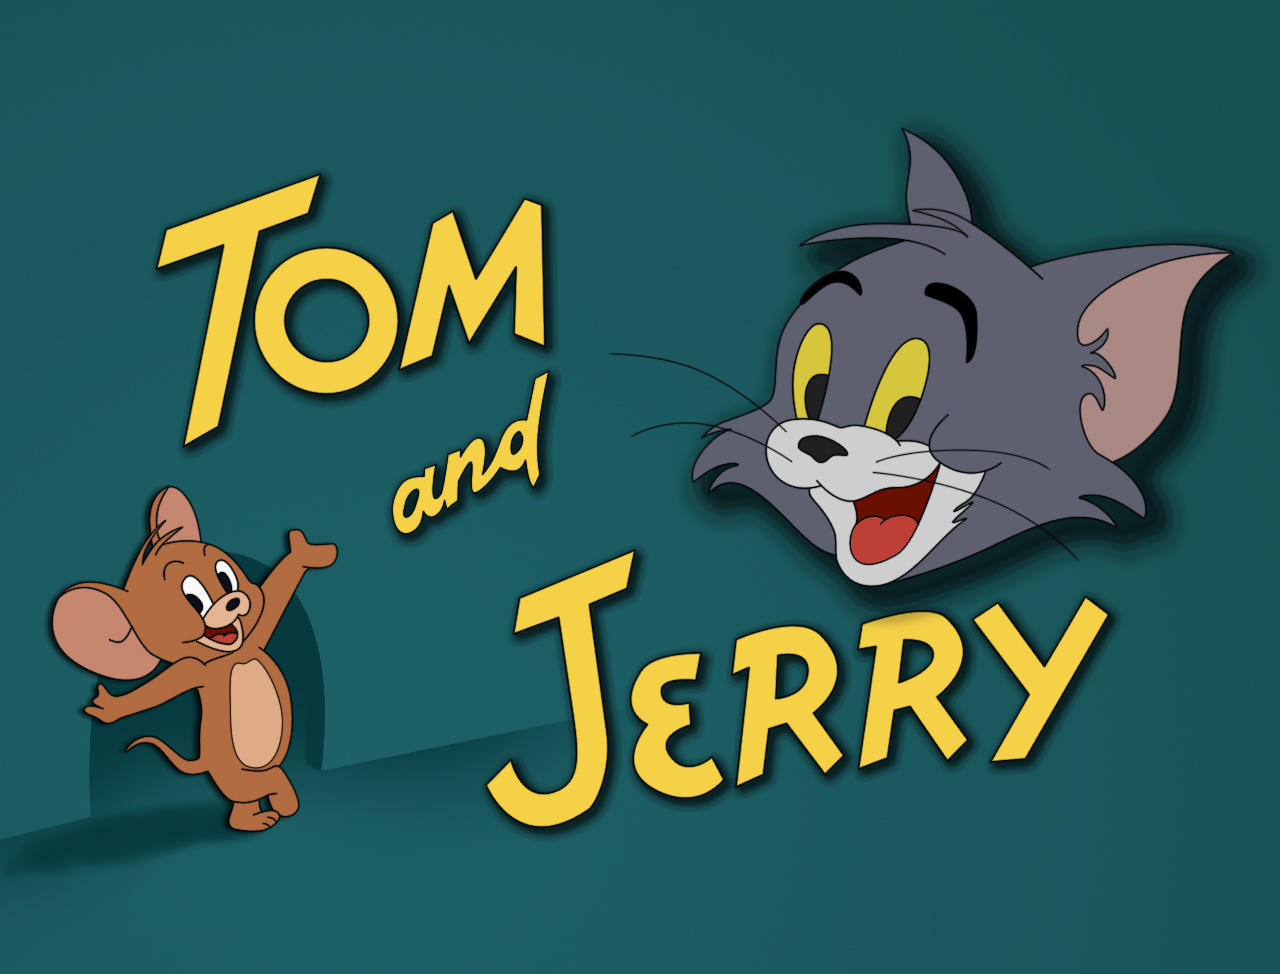 Jerry Chuột Tom Mèo Tom và Jerry phim Hoạt hình Vẽ  Tom và Jerry PNG png  tải về  Miễn phí trong suốt Màu Hồng png Tải về